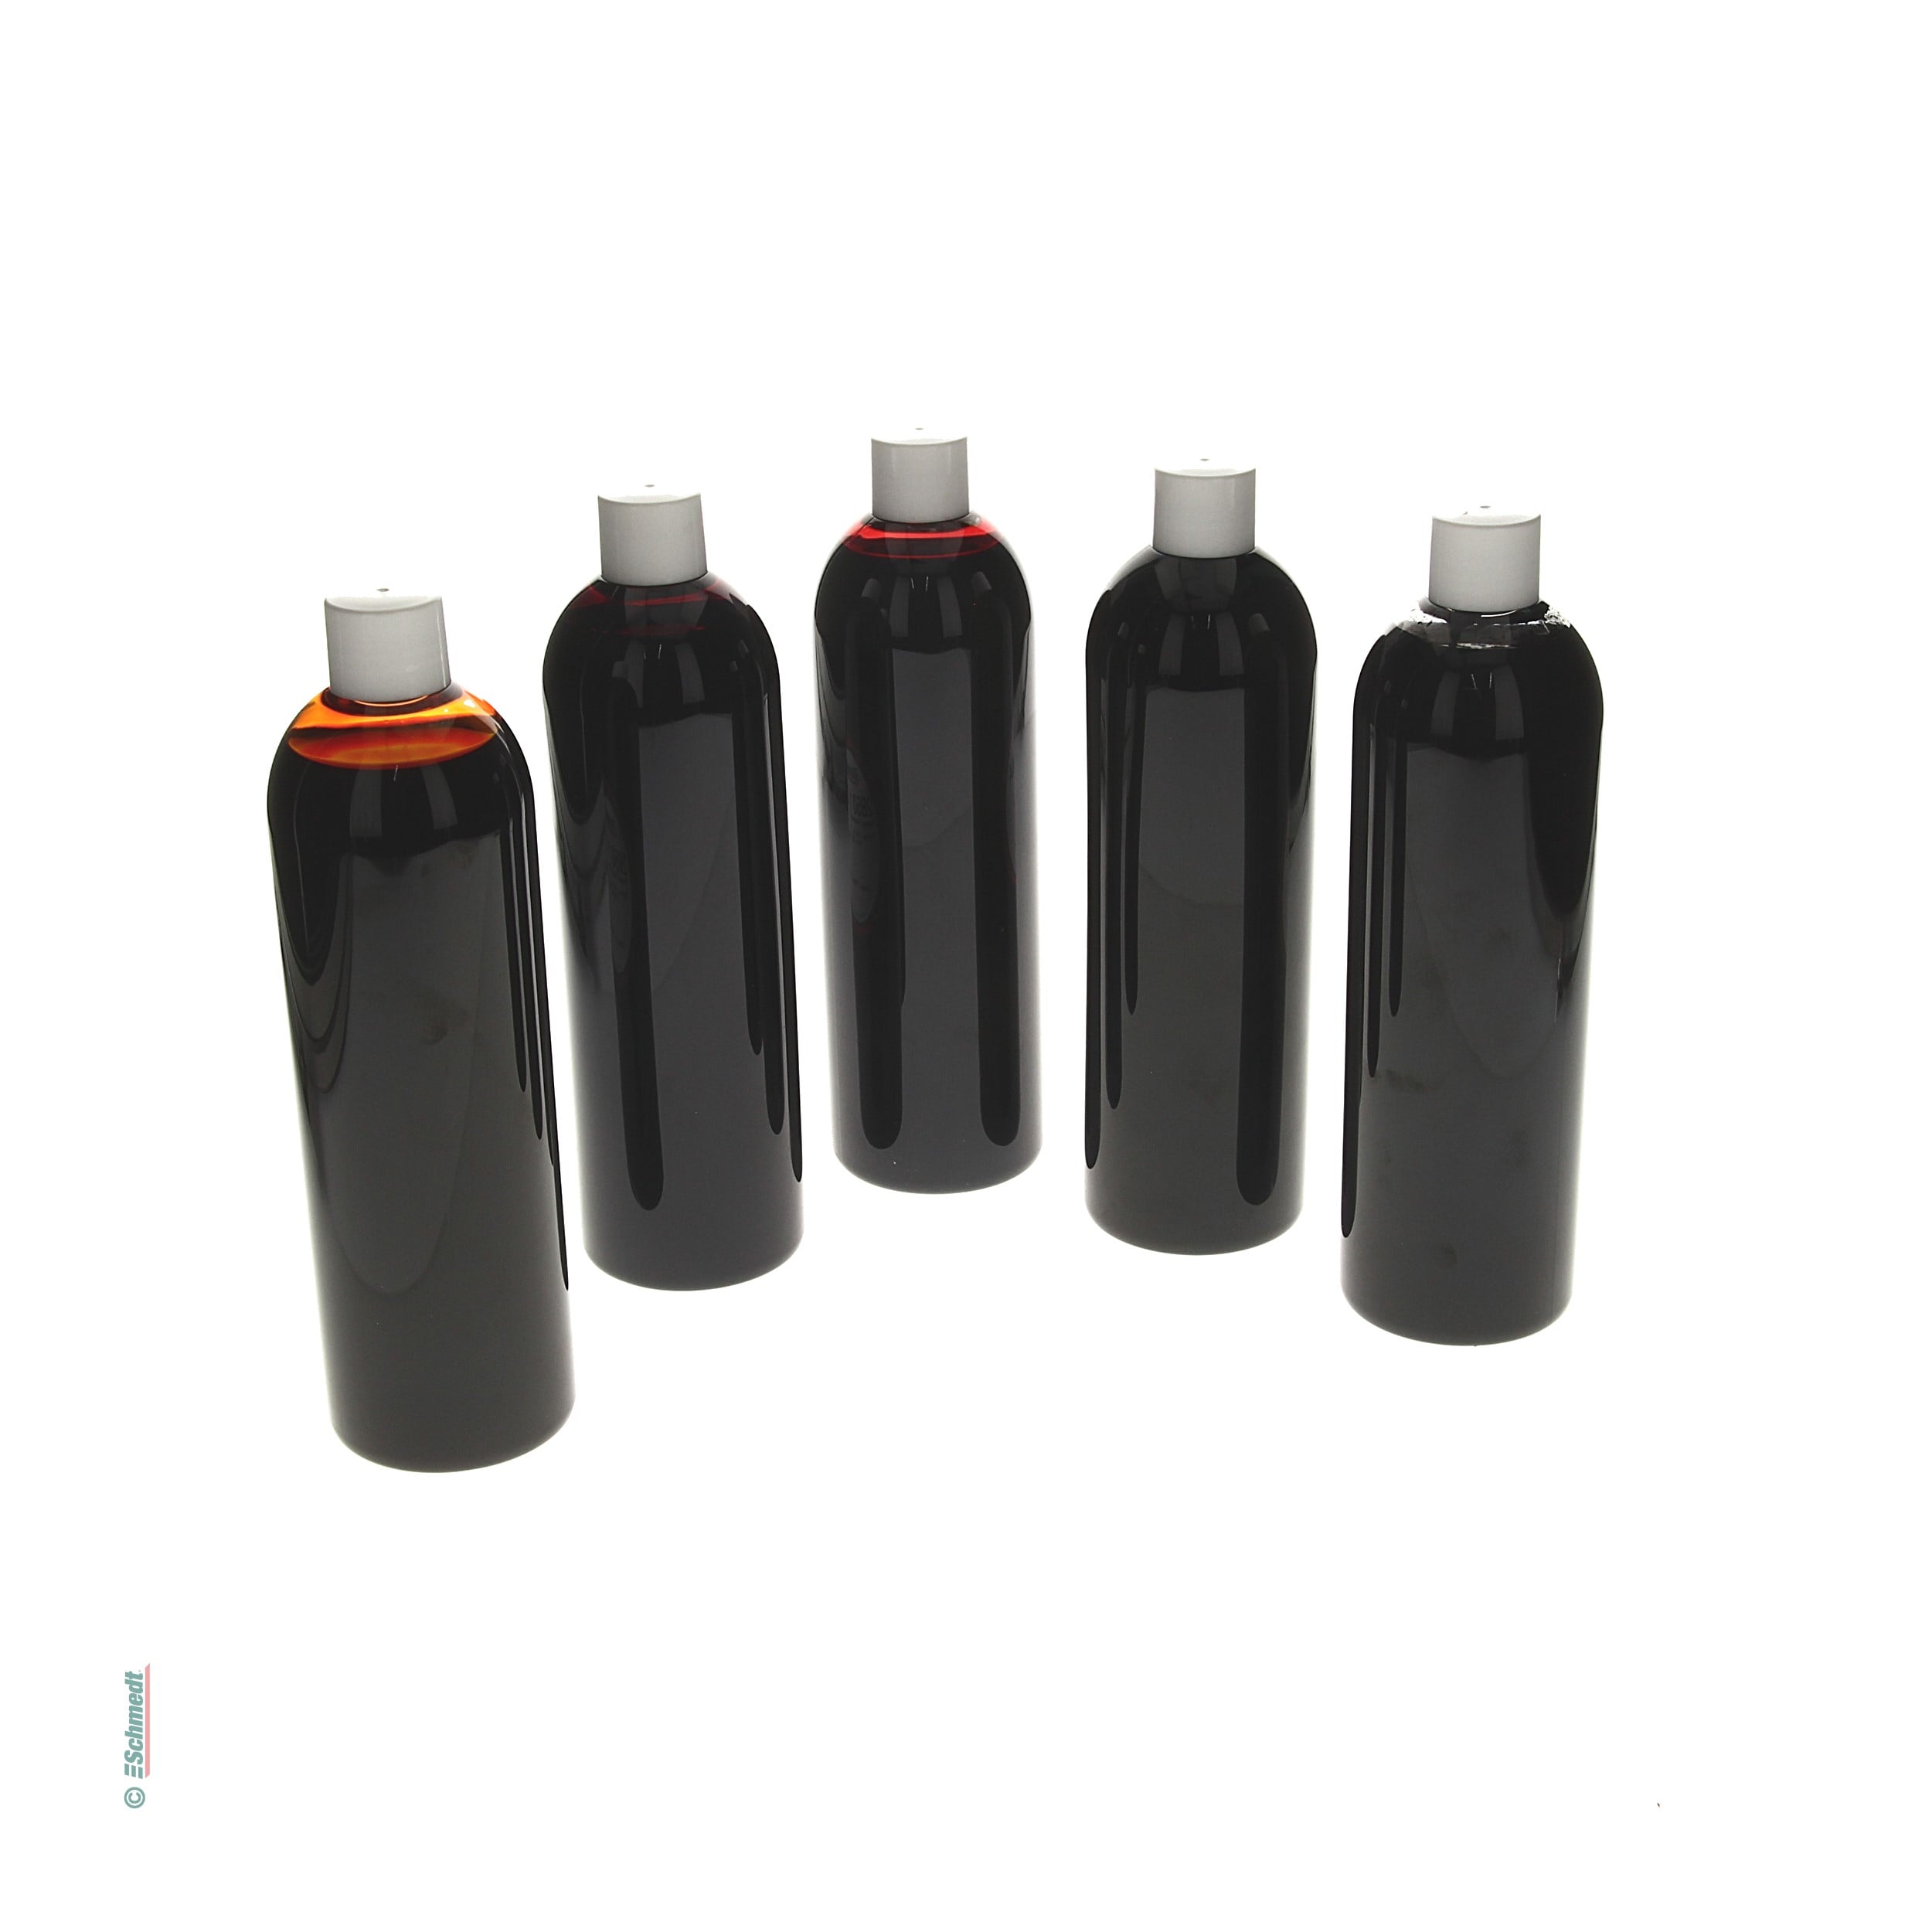 Pergasol Papierfarben | Set - bestehend aus 5 Flaschen à 500 ml aller Einzelfarben - zum Färben von Fasern und Papierbögen im Tauchverfahren... - Bild-1